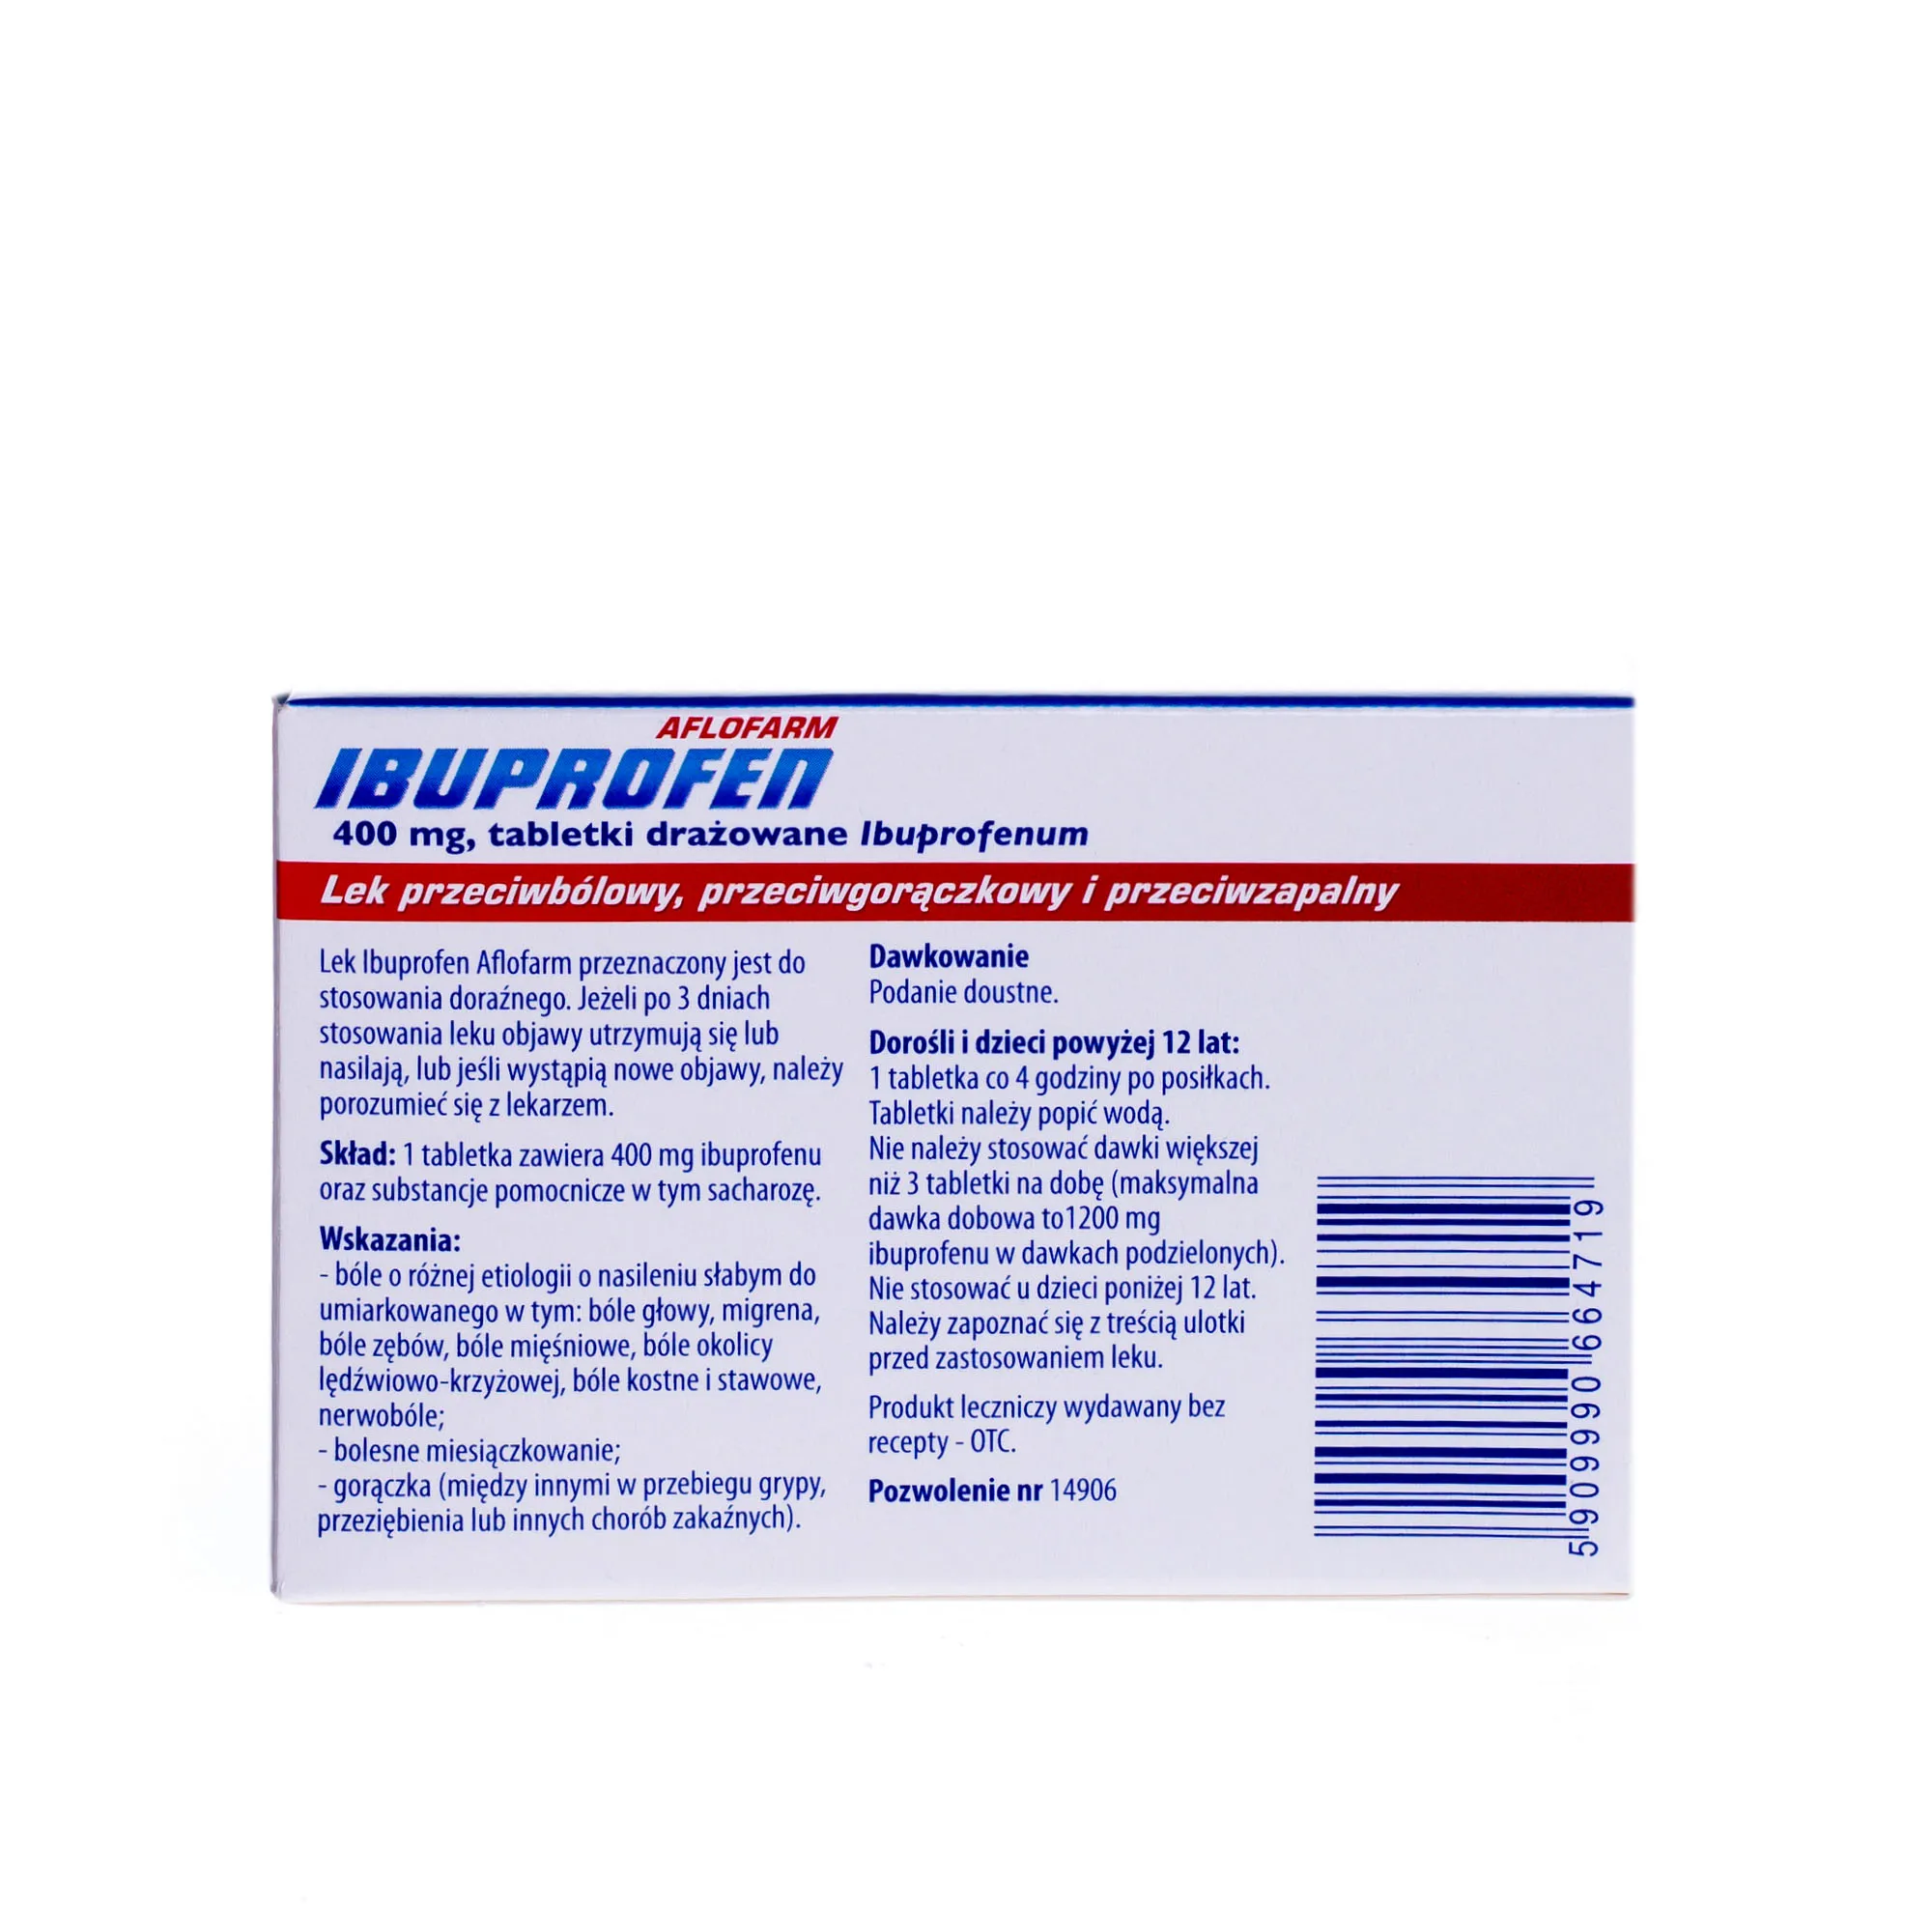 Ibuprofen Aflofarm, 400 mg, 20 tabletek drażowanych 